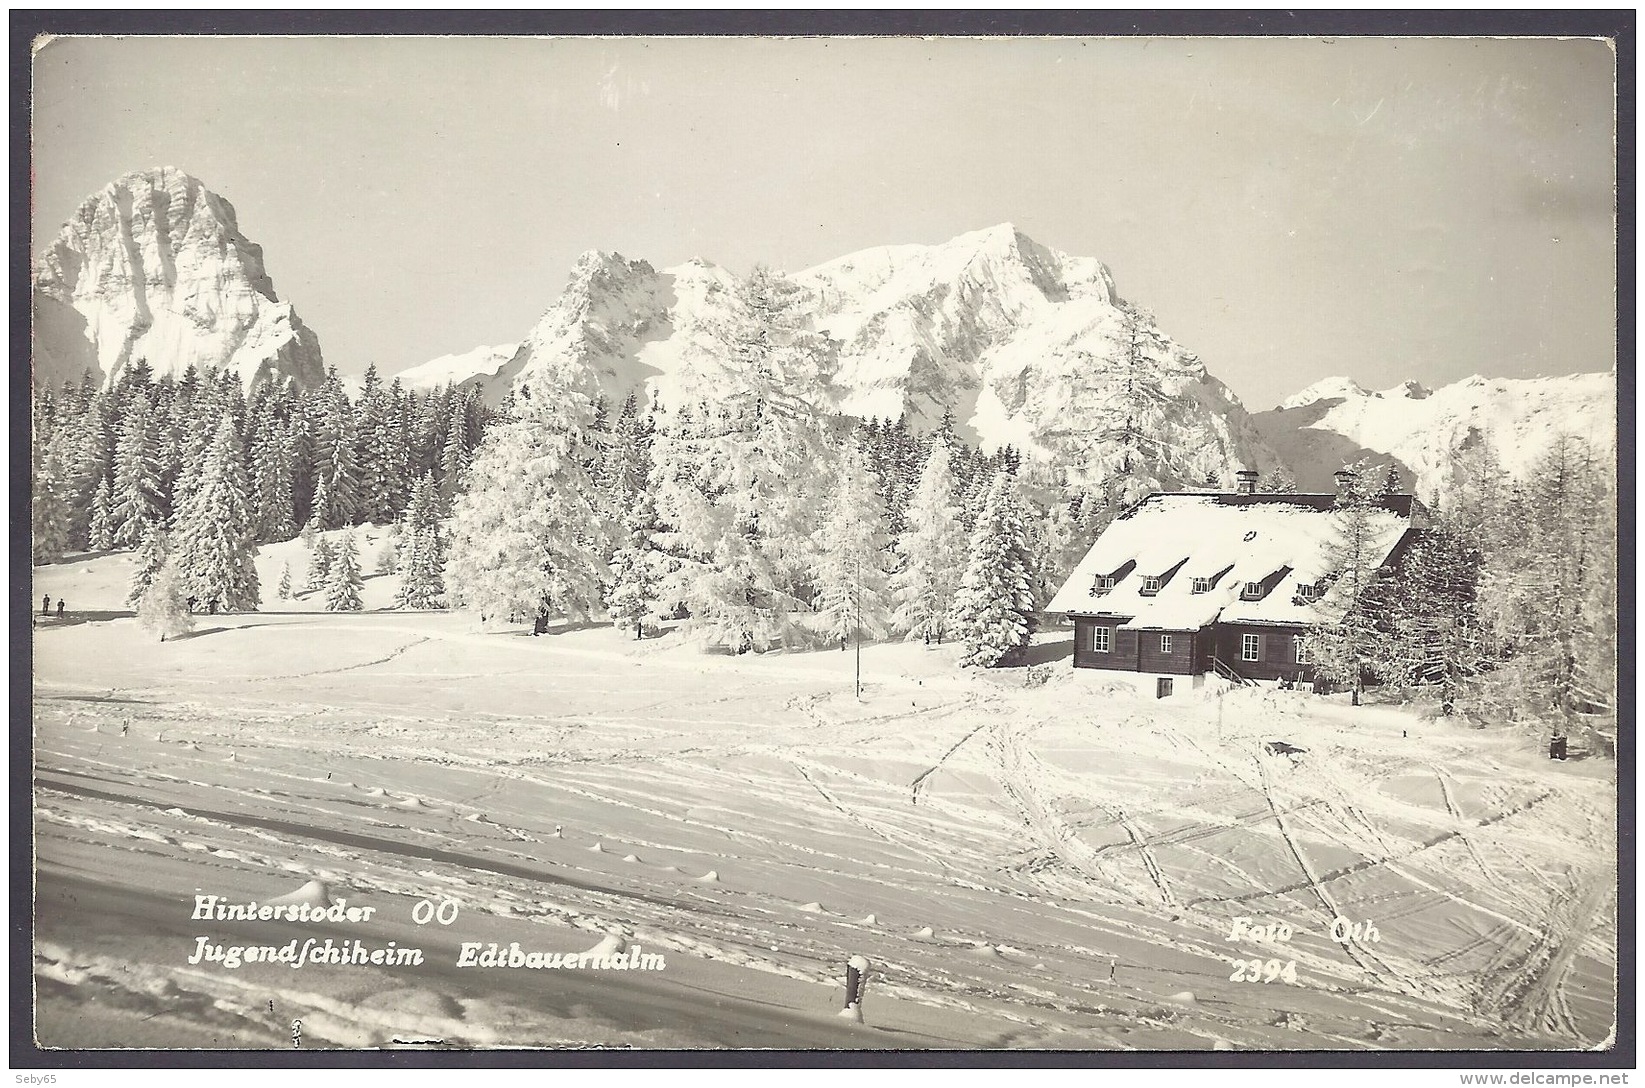 Austria / Osterreich - Oberosterreich - Hinterstoder, Edtbauernalm, Winter View, Snow PC - Hinterstoder